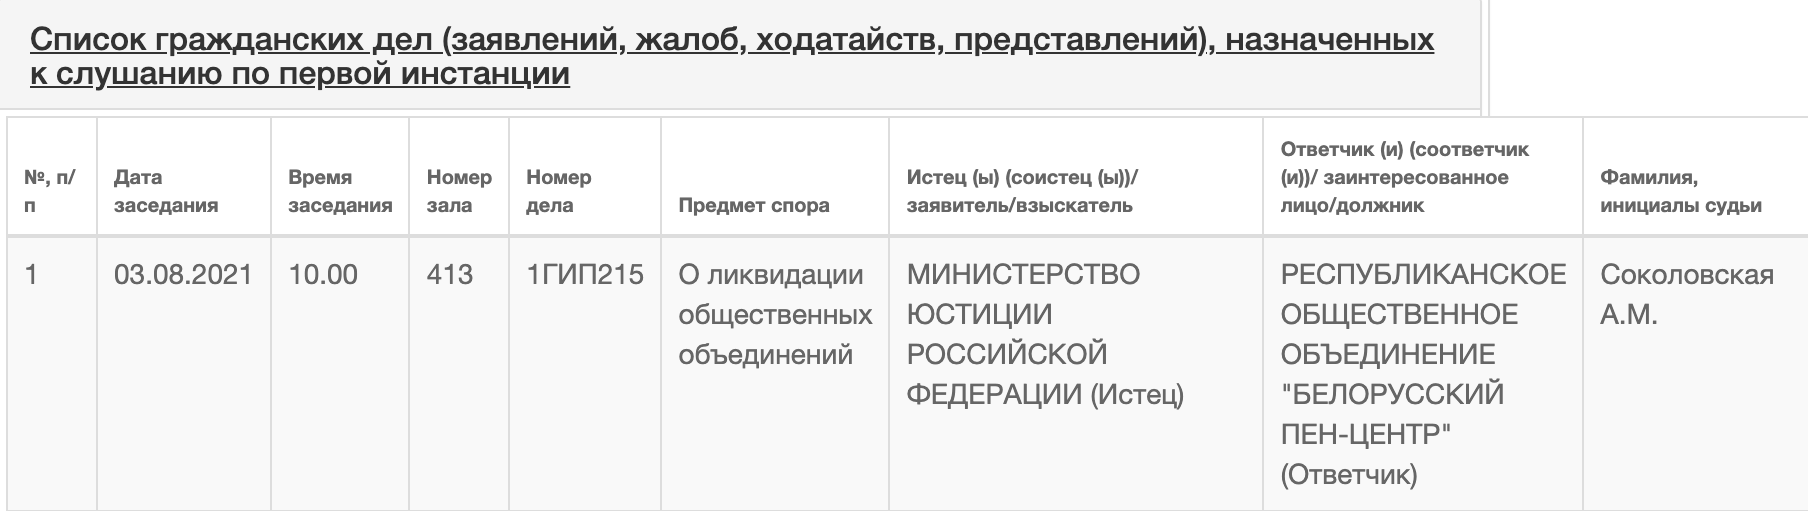 Российский Минюст предложил ликвидировать беларусский ПЕН-Центр?